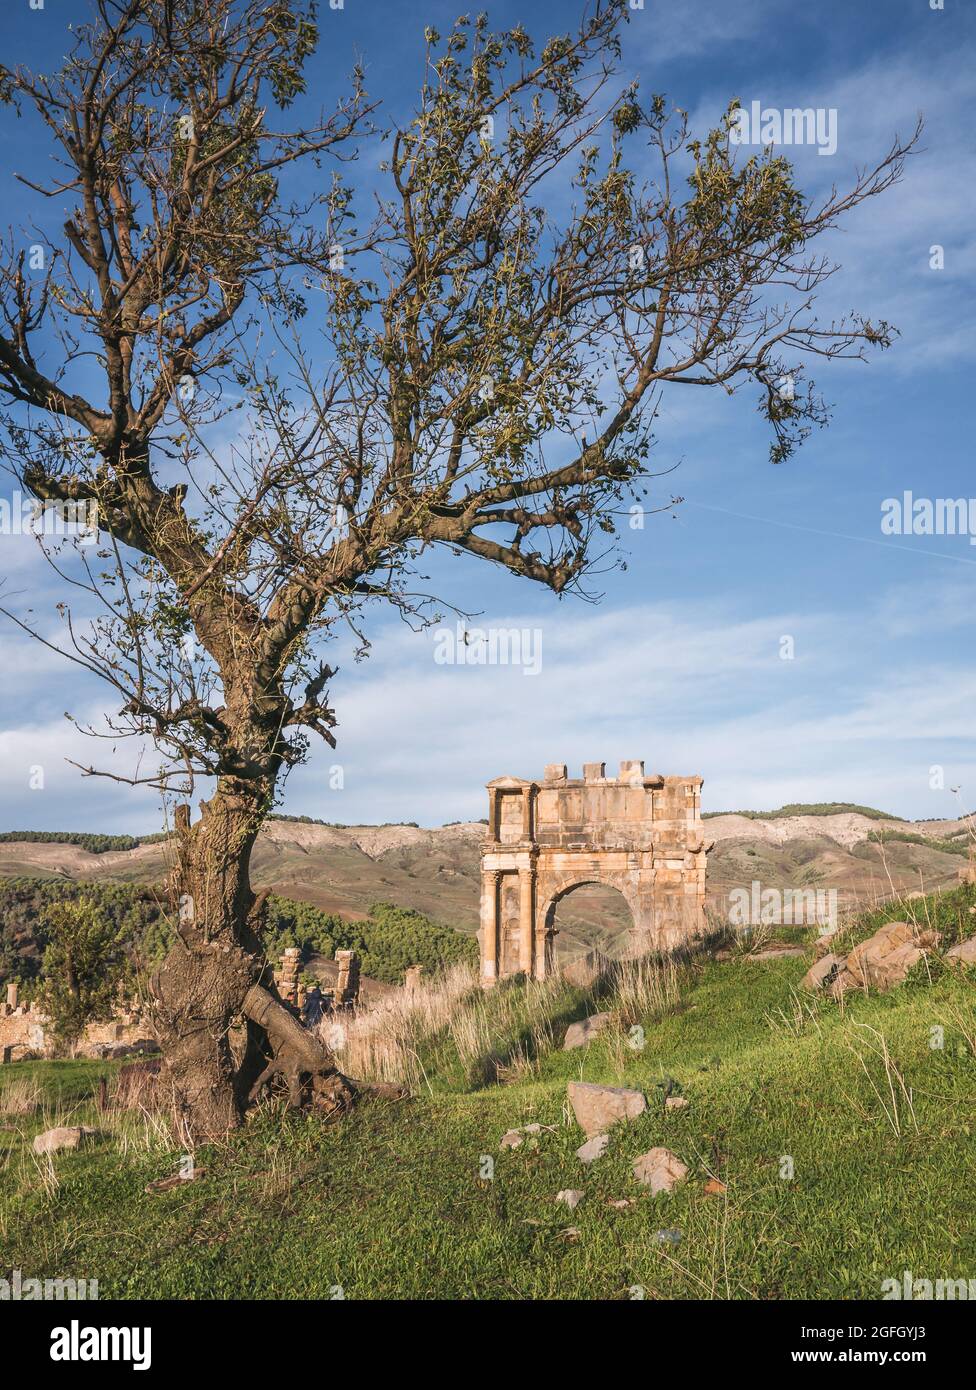 Ville romaine de Djemila, Algérie - Patrimoine mondial de l'UNESCO Banque D'Images